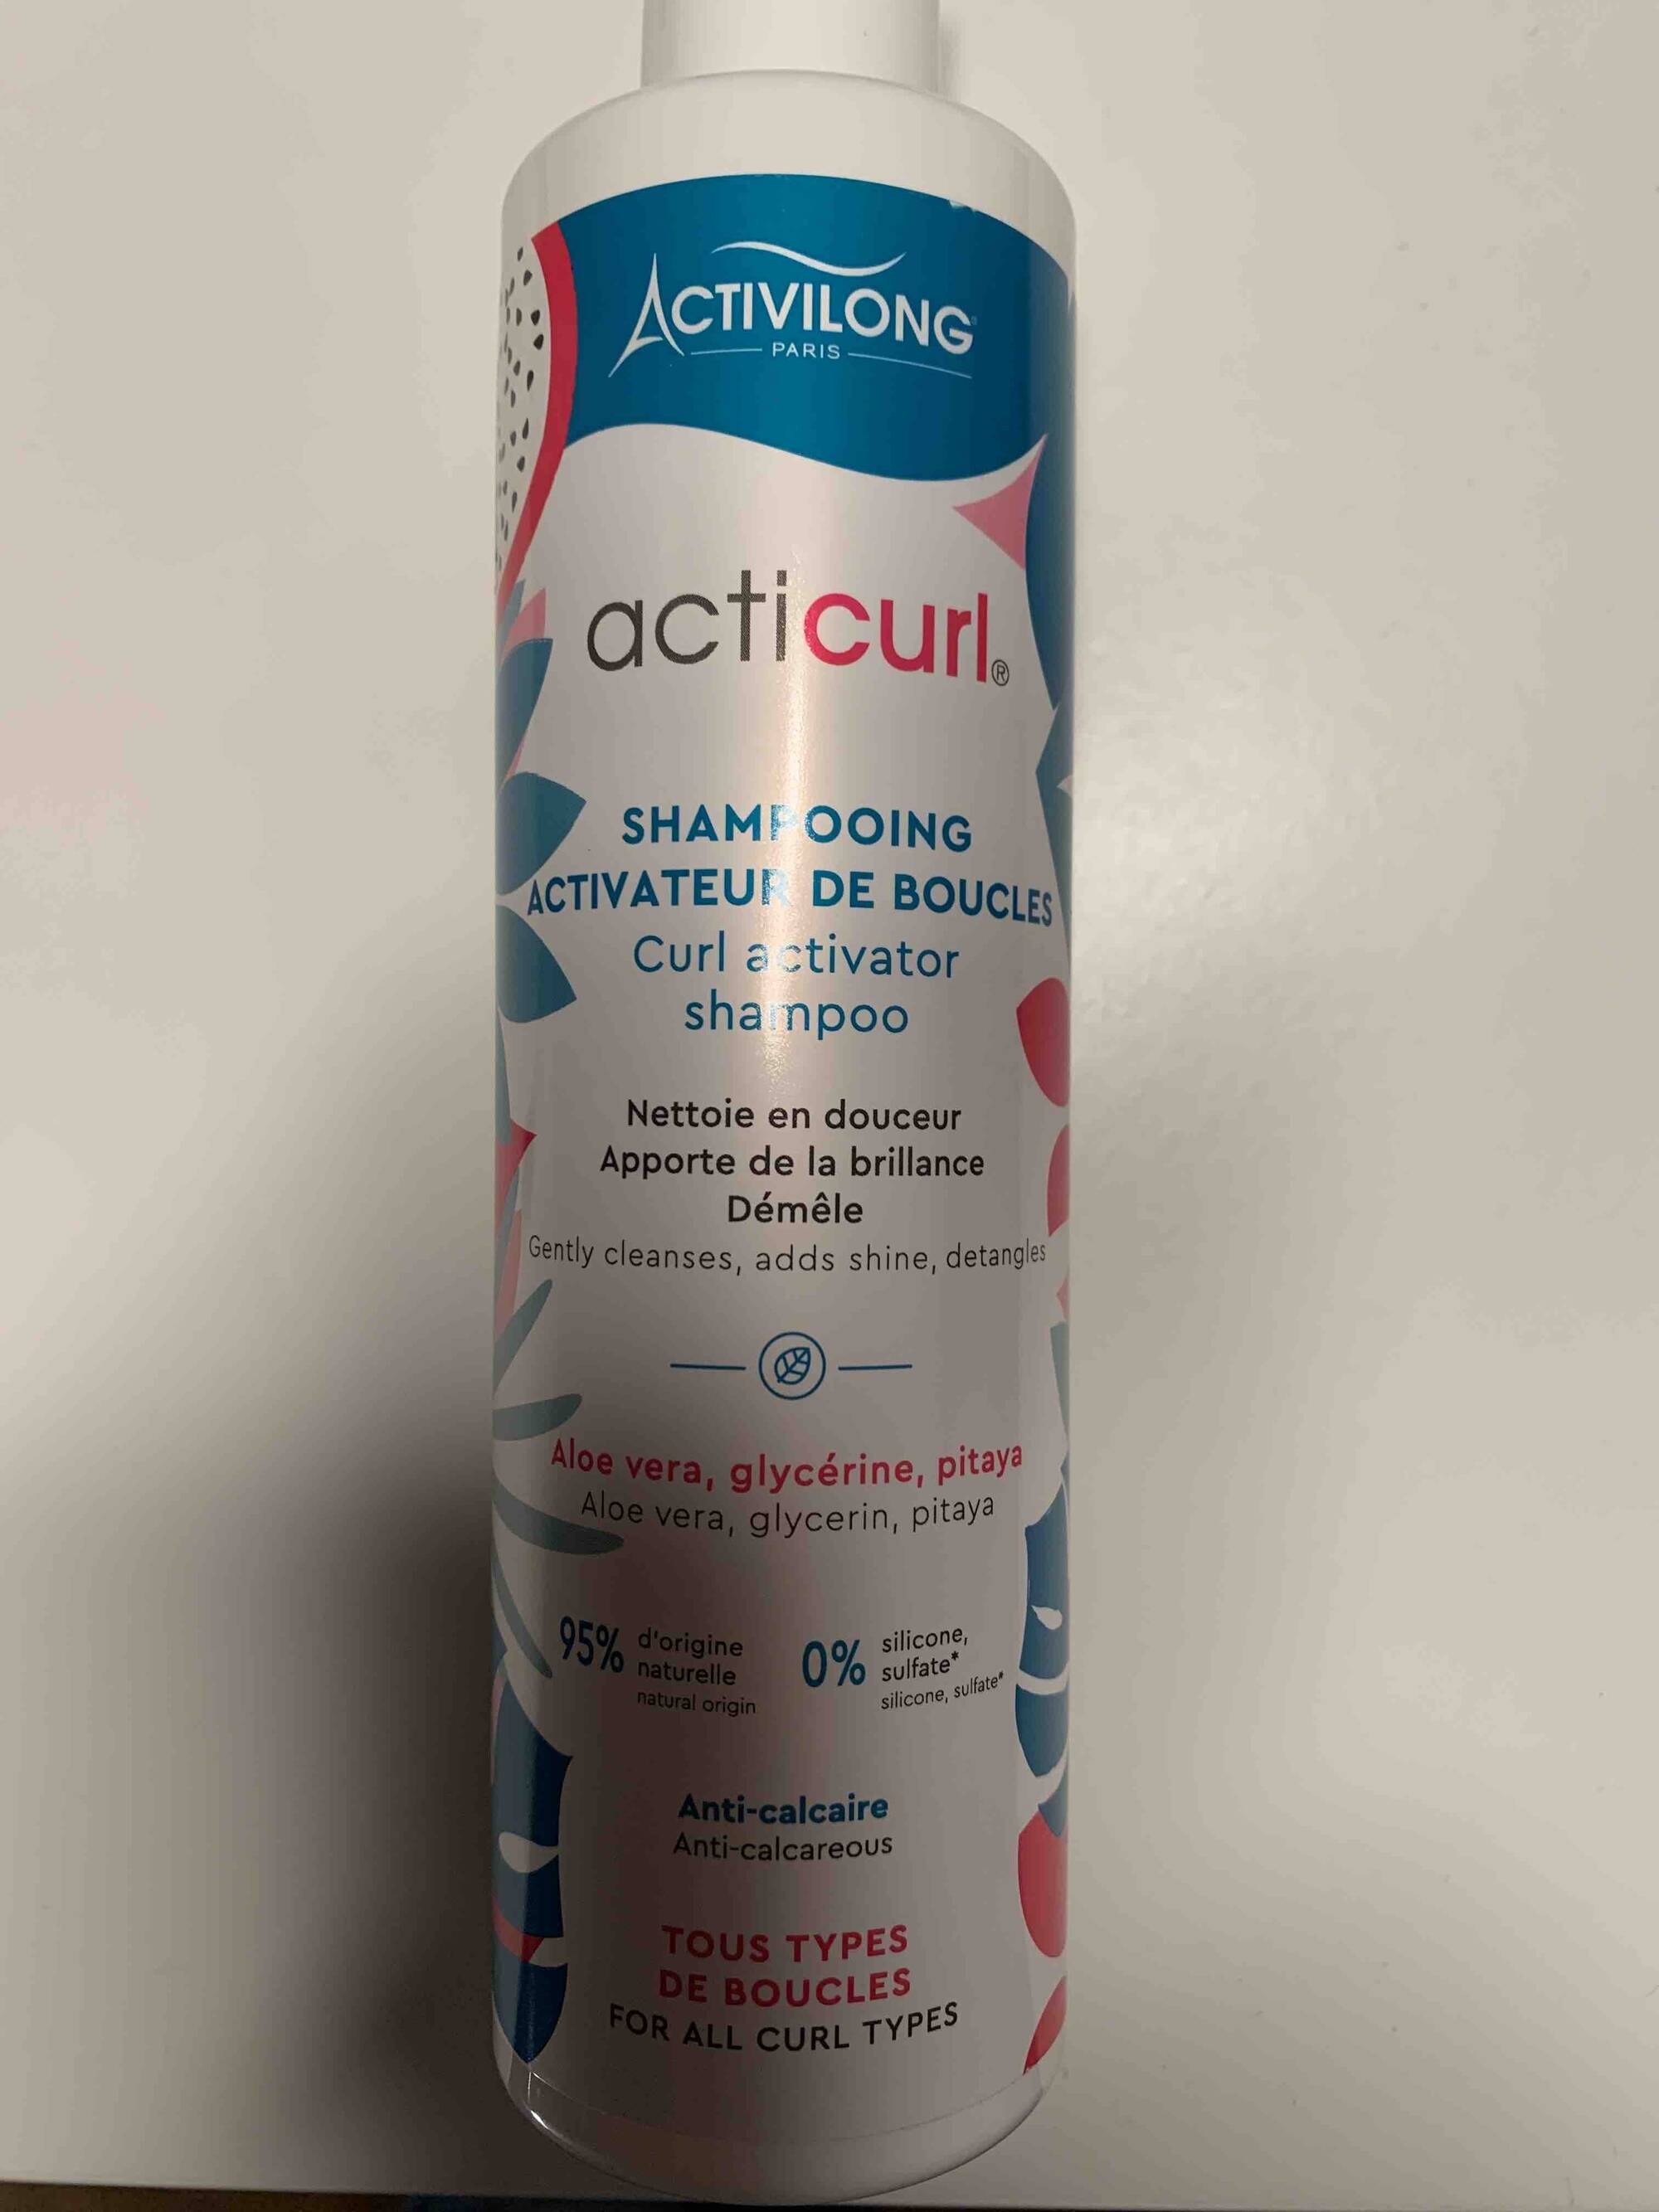 ACTIVILONG - Acticurl - Shampooing activateur de boucles